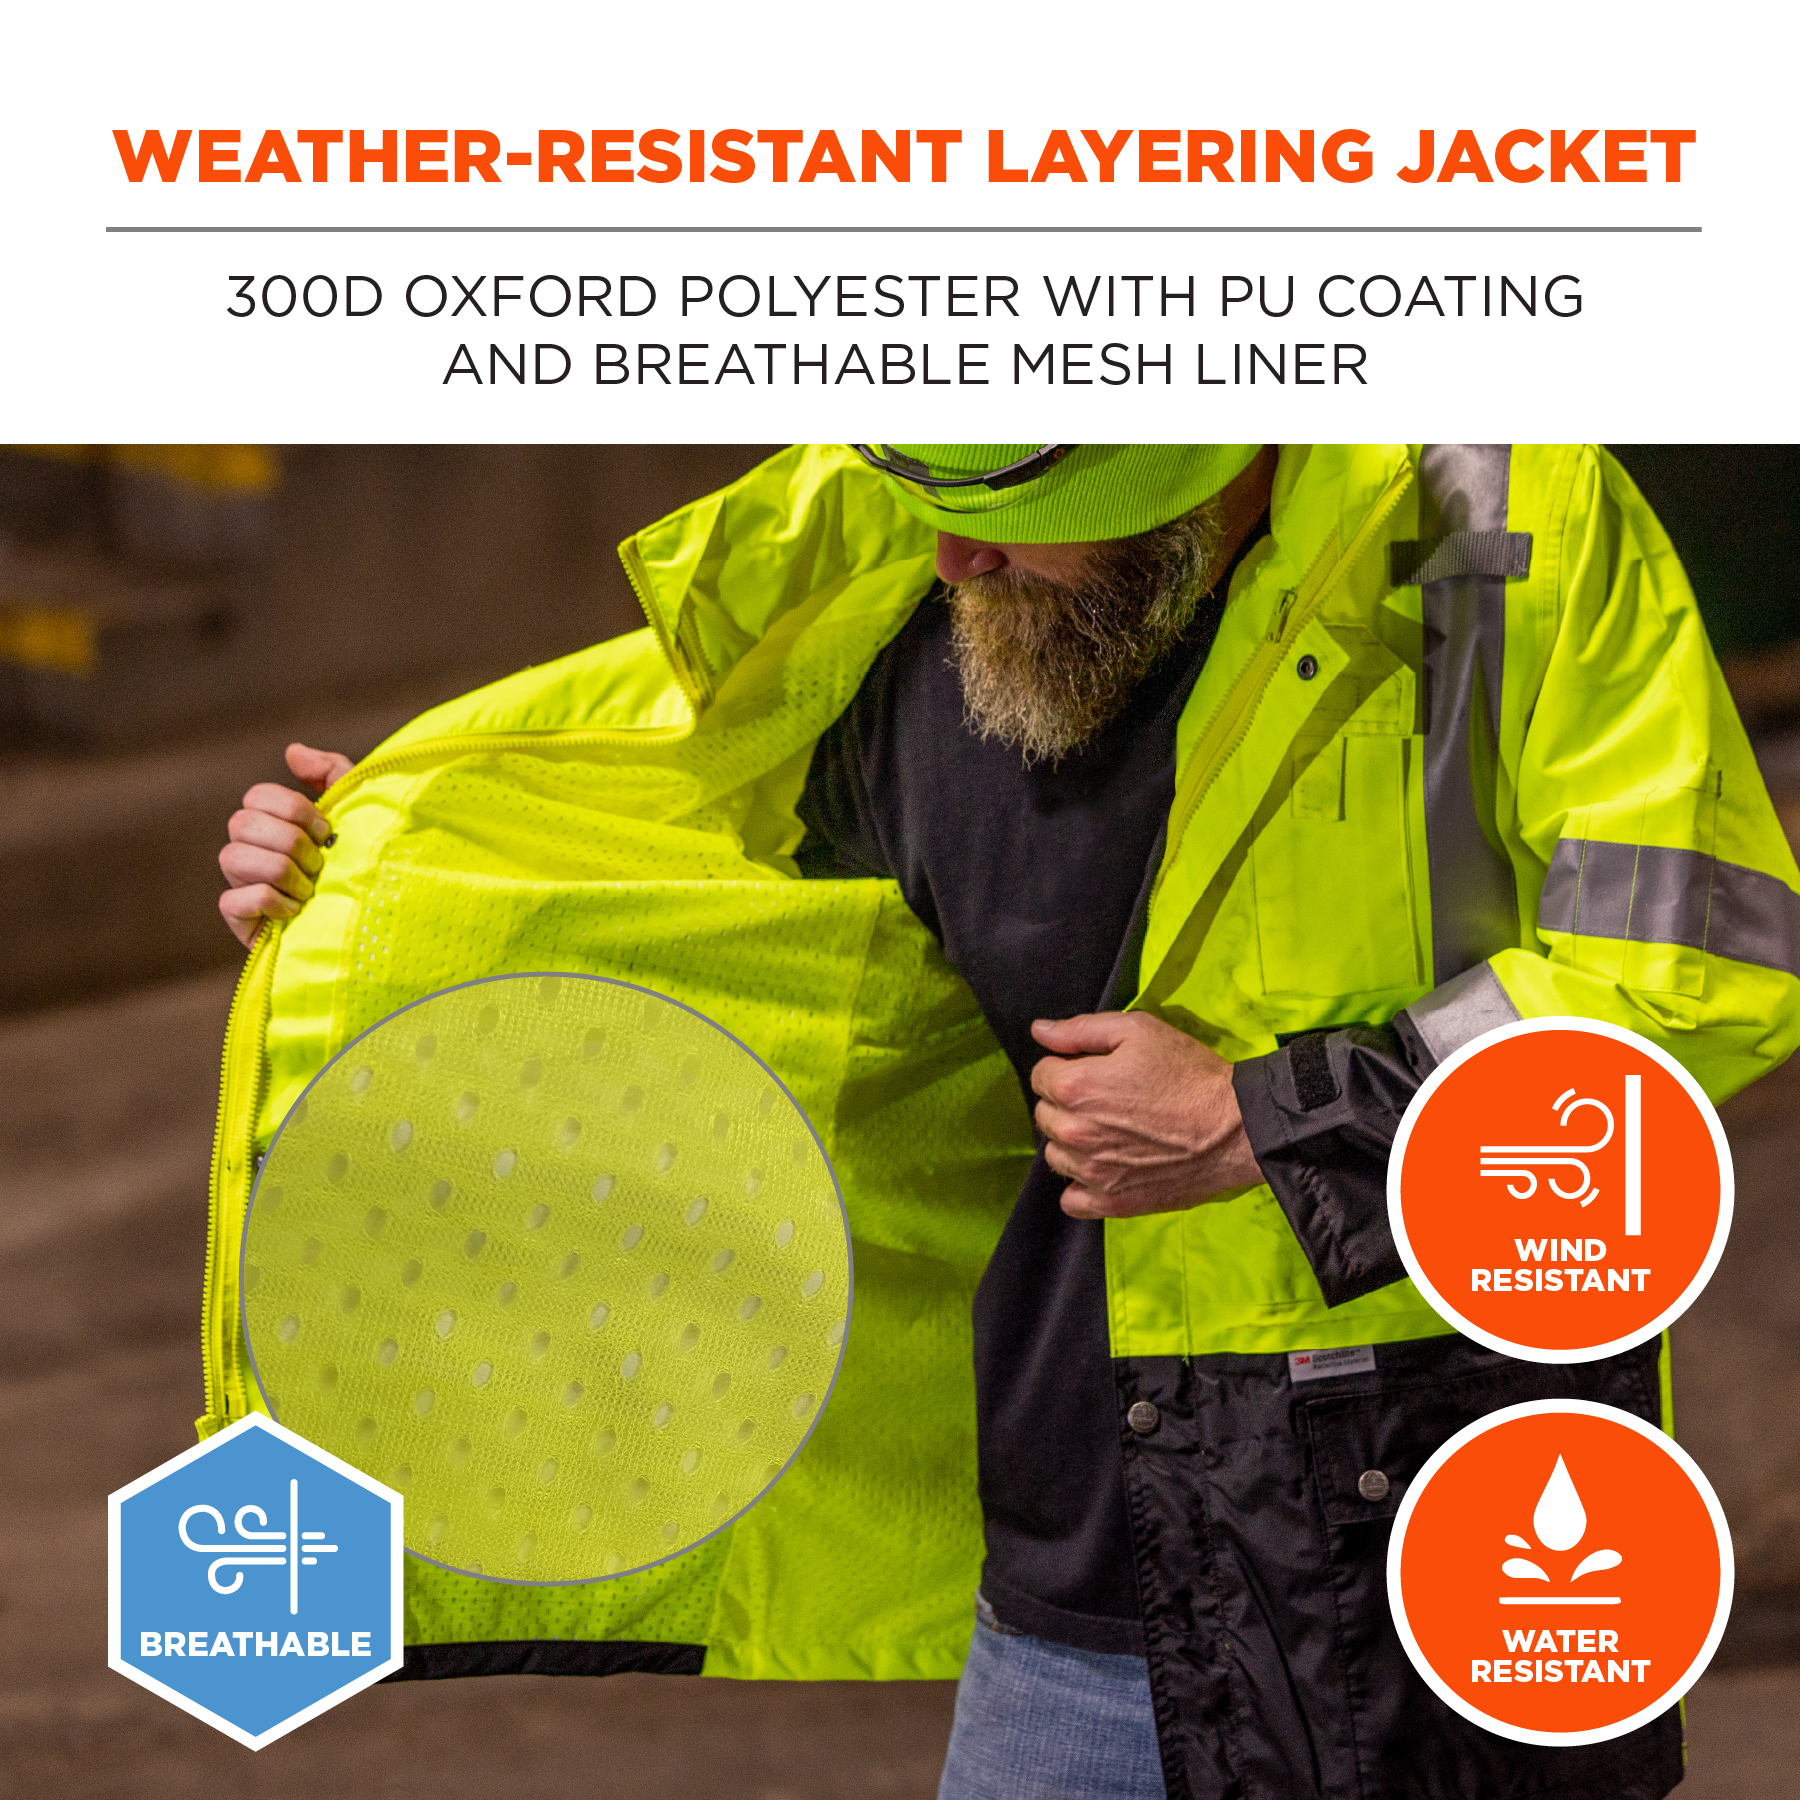 https://www.ergodyne.com/sites/default/files/product-images/25372-8386-hi-vis-shell-jacket-lime-weather-resistant-layering-jacket.jpg